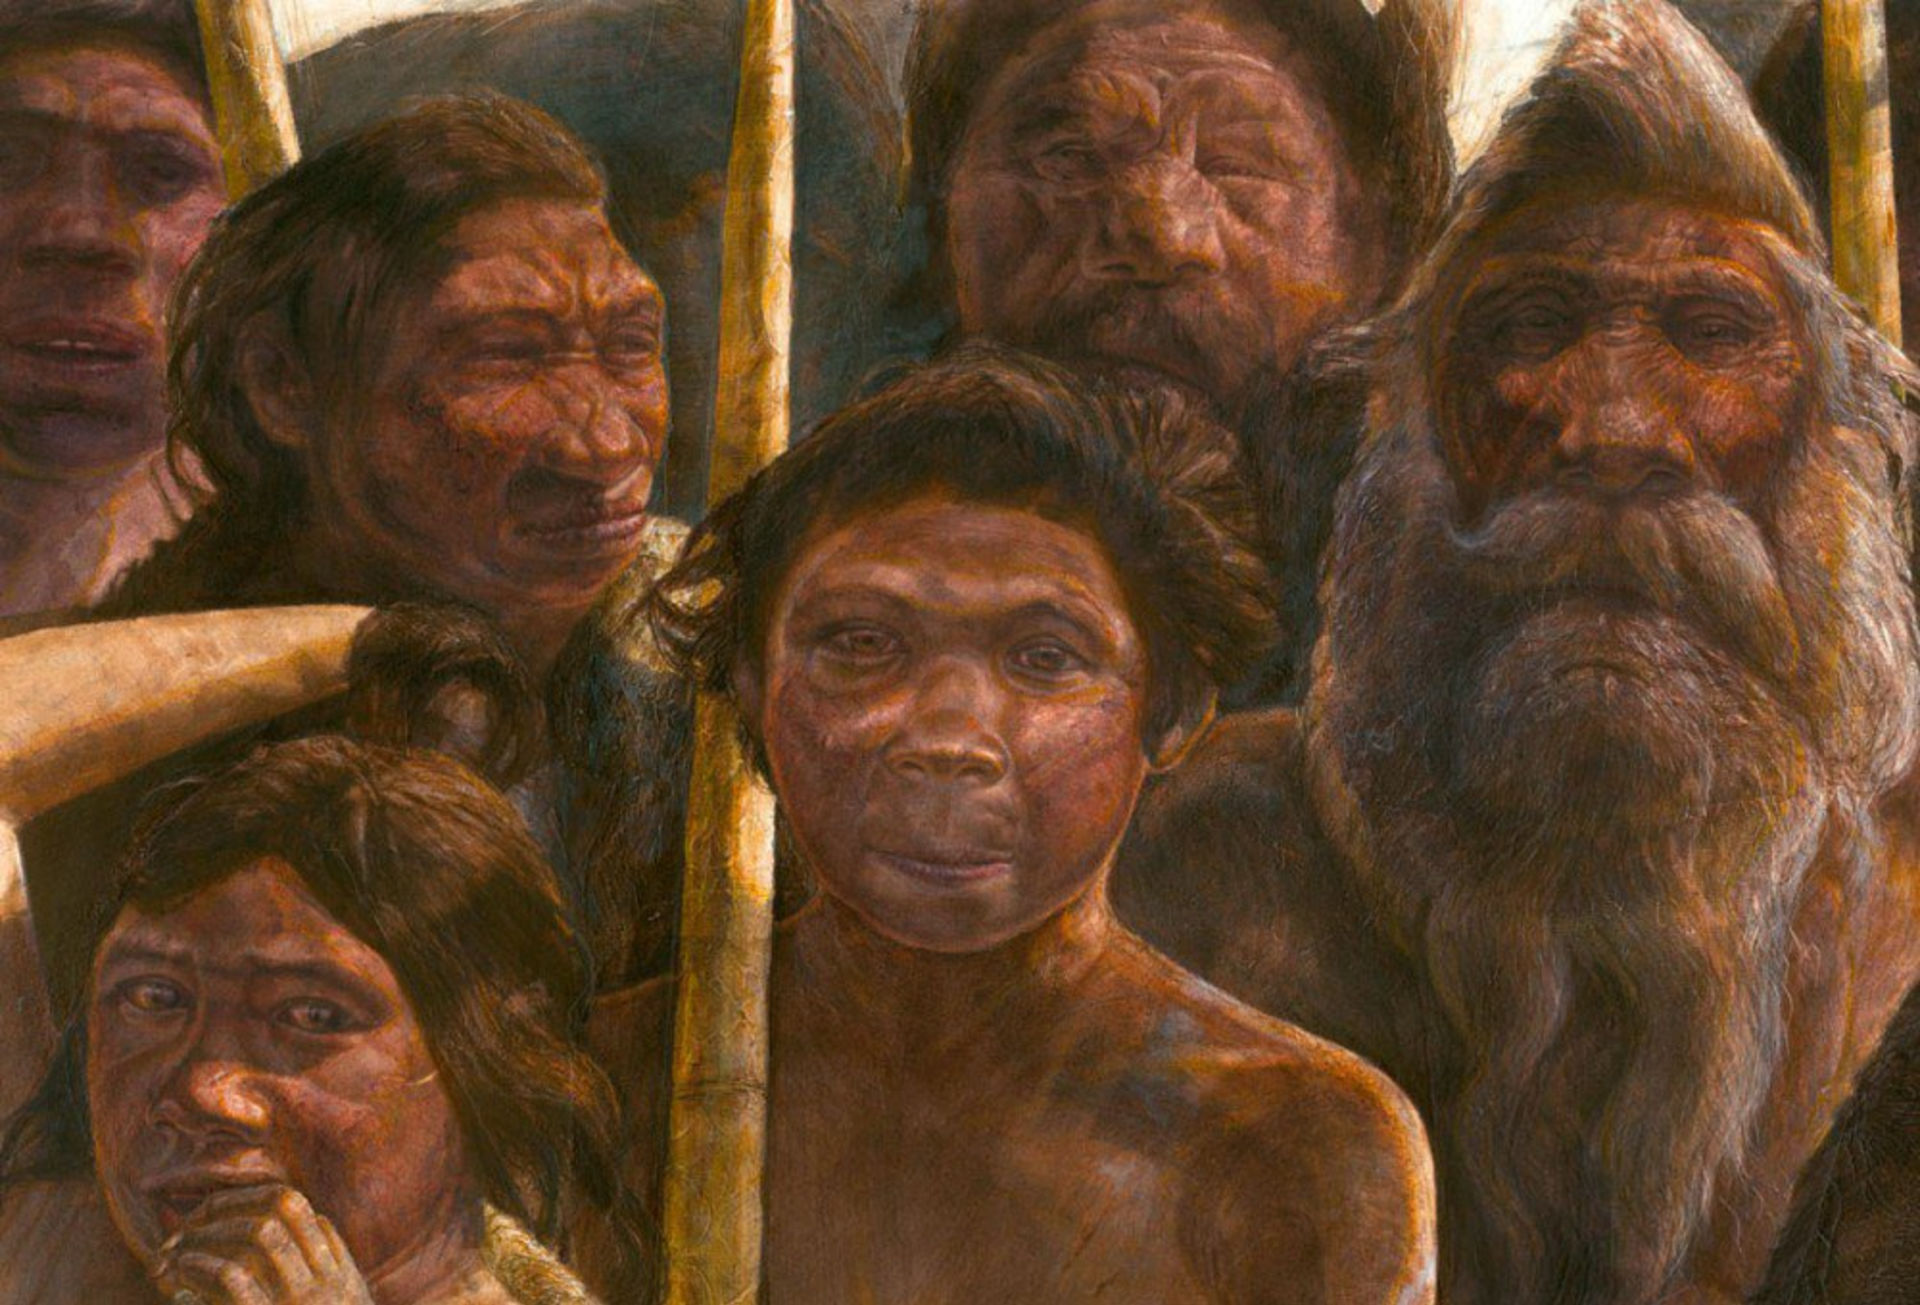 Первые люди на Земле появились у берегов реки Замбези в Африке сотни тысяч  лет назад - ученые | RefNews